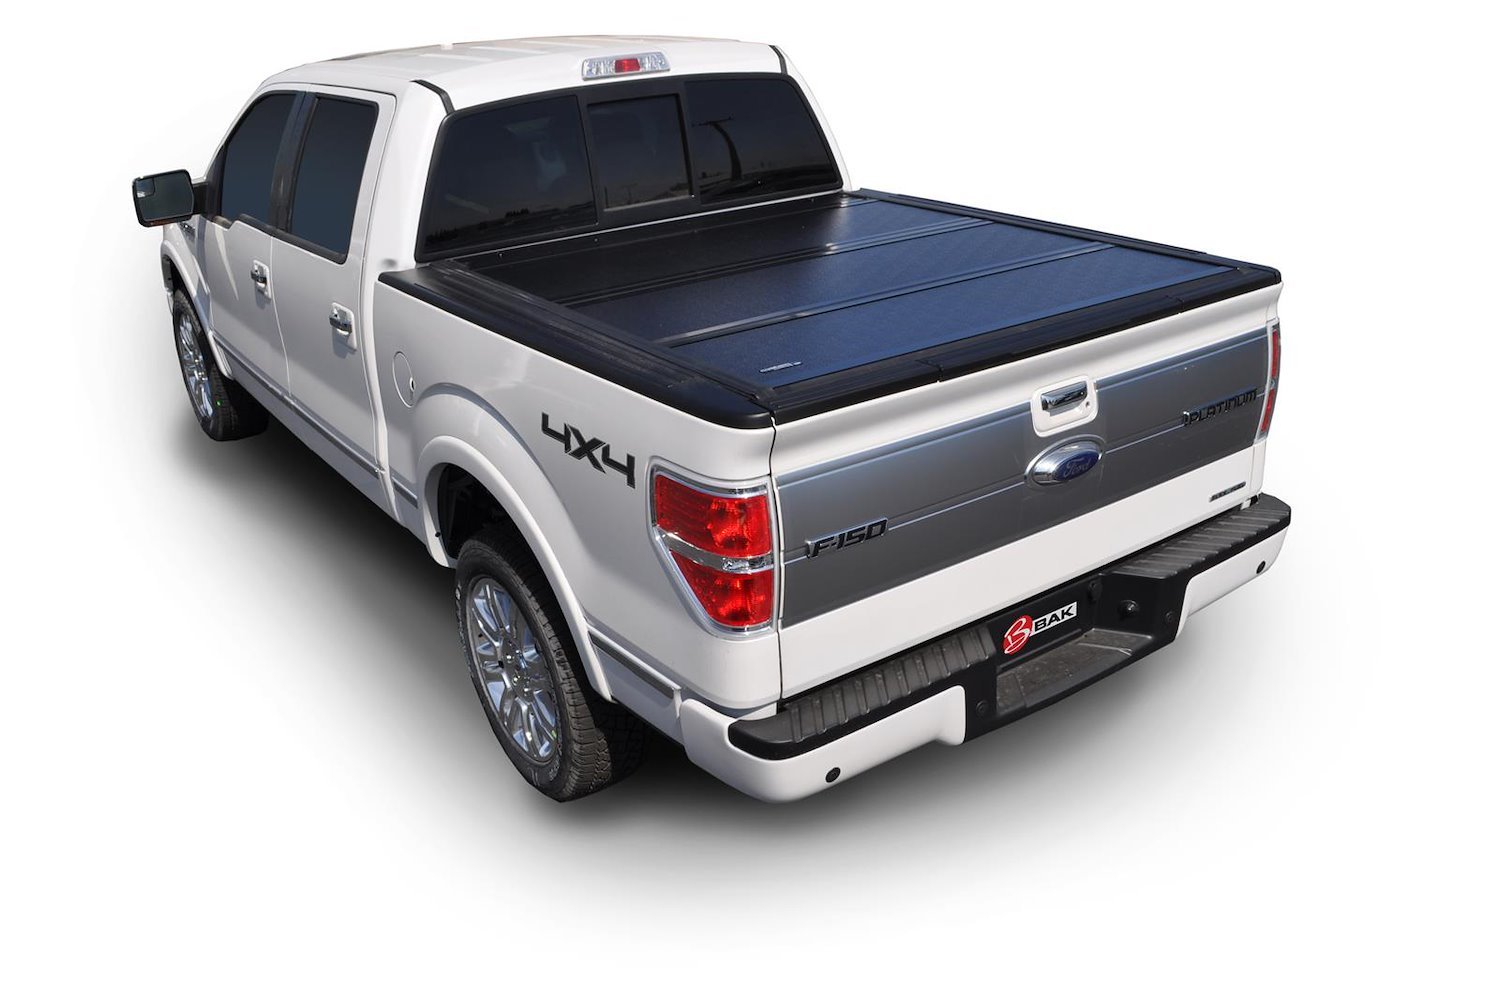 226306 BAKFlip G2 for 94-11 Ford Ranger 7.1 ft. Bed, Hard Folding Cover Style [Black Finish]